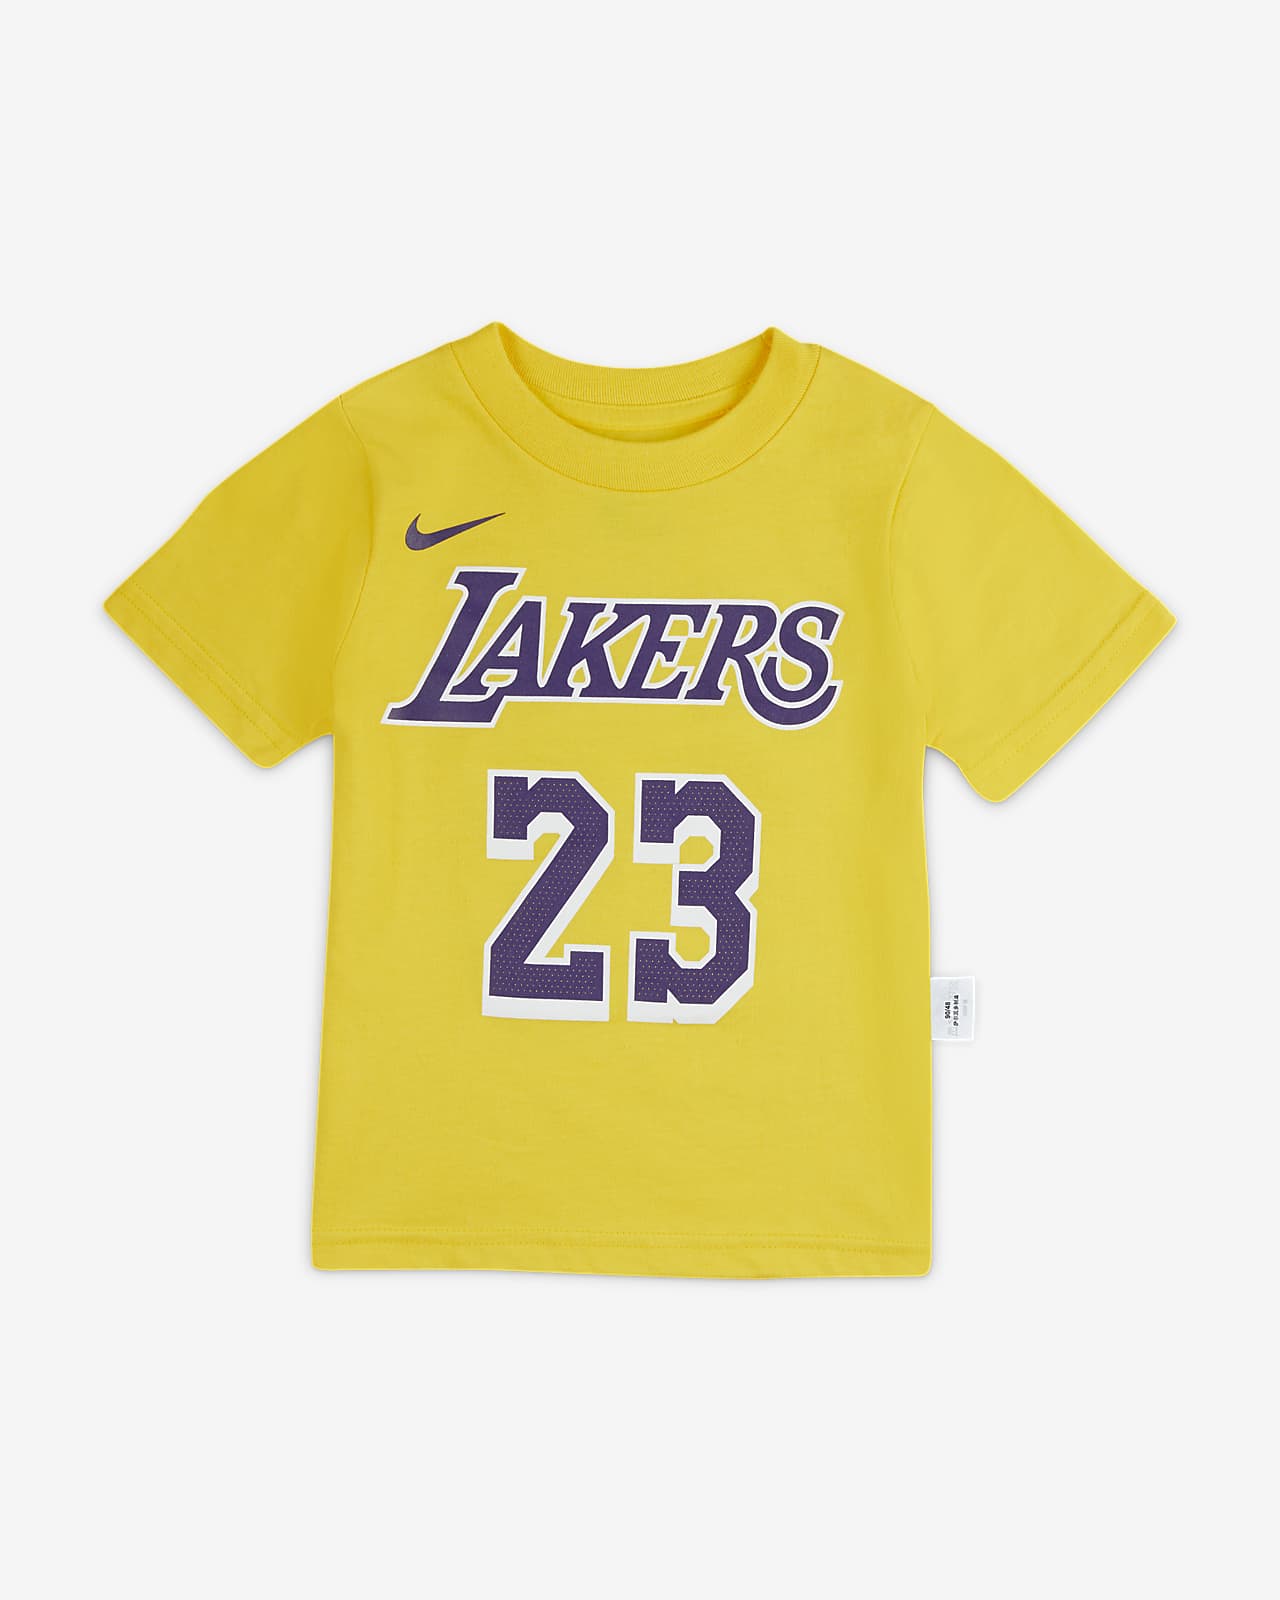 洛杉矶湖人队 Nike NBA 婴童T恤